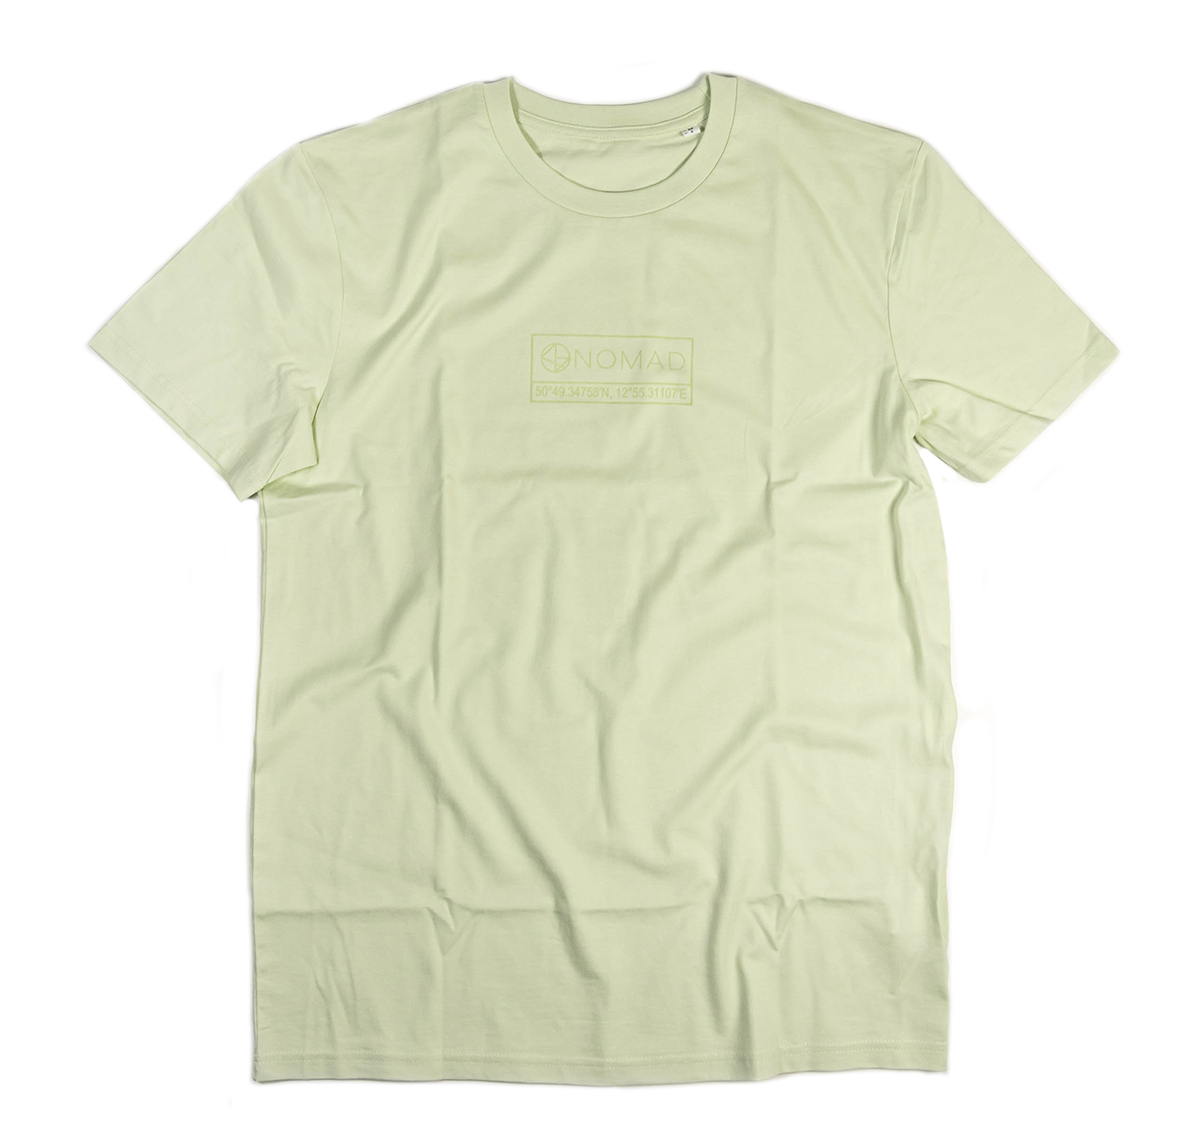 NOMAD Logo Shirt - Vintage Pastels - Green front